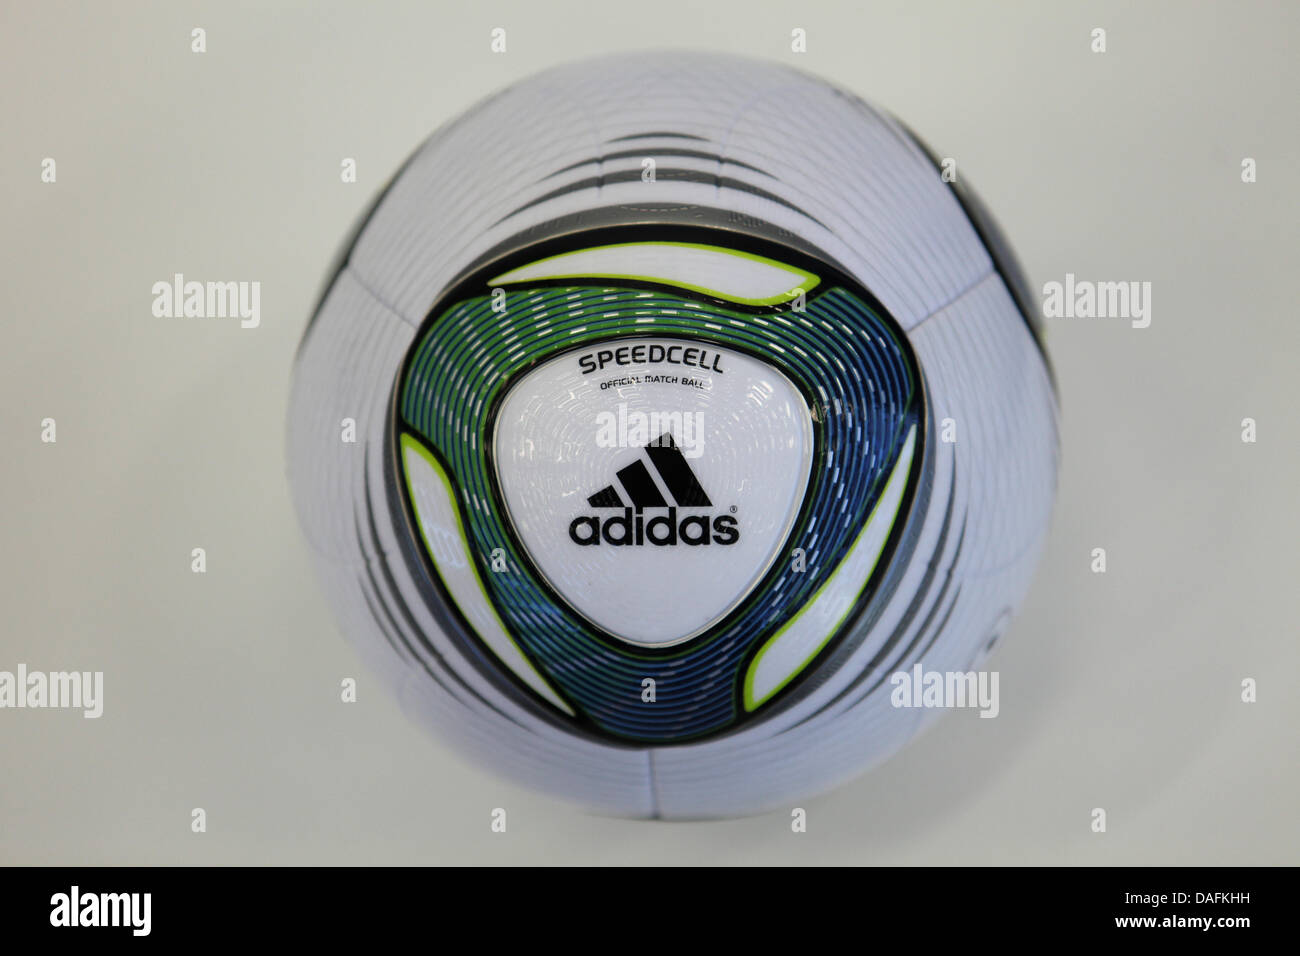 Abreviar ellos sentido El balón oficial de la Copa Mundial Femenina de la FIFA, llamado Speedcell  de adidas, que se presenta en Herzogenaurach, Alemania, 2 de marzo de 2011.  Foto: Daniel Karmann Fotografía de stock - Alamy